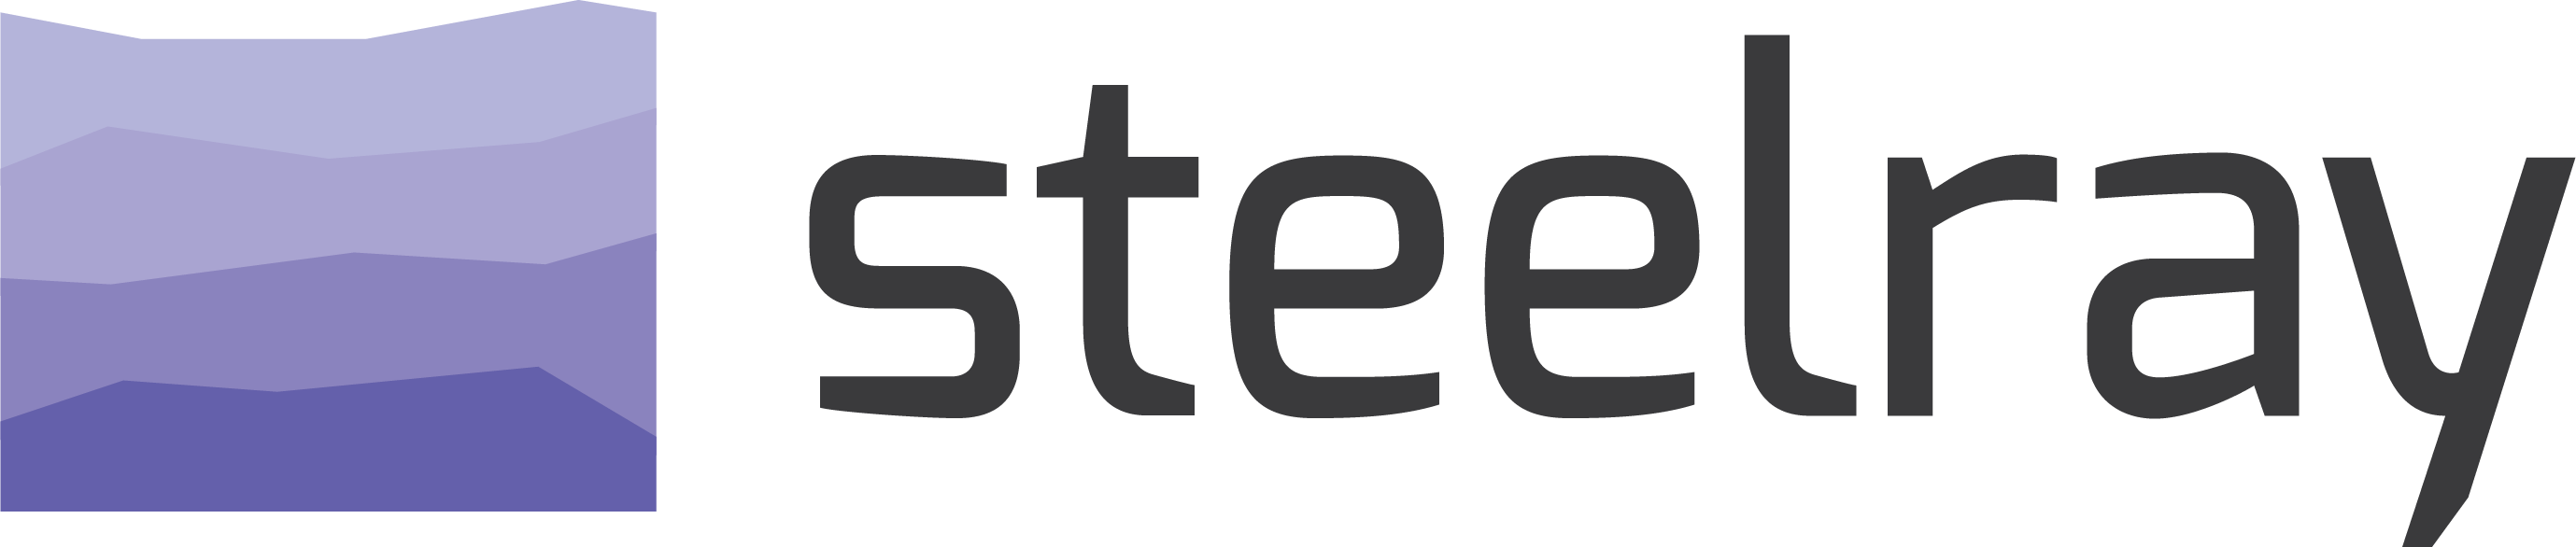 Steelray Logo For Light BG Large (002)